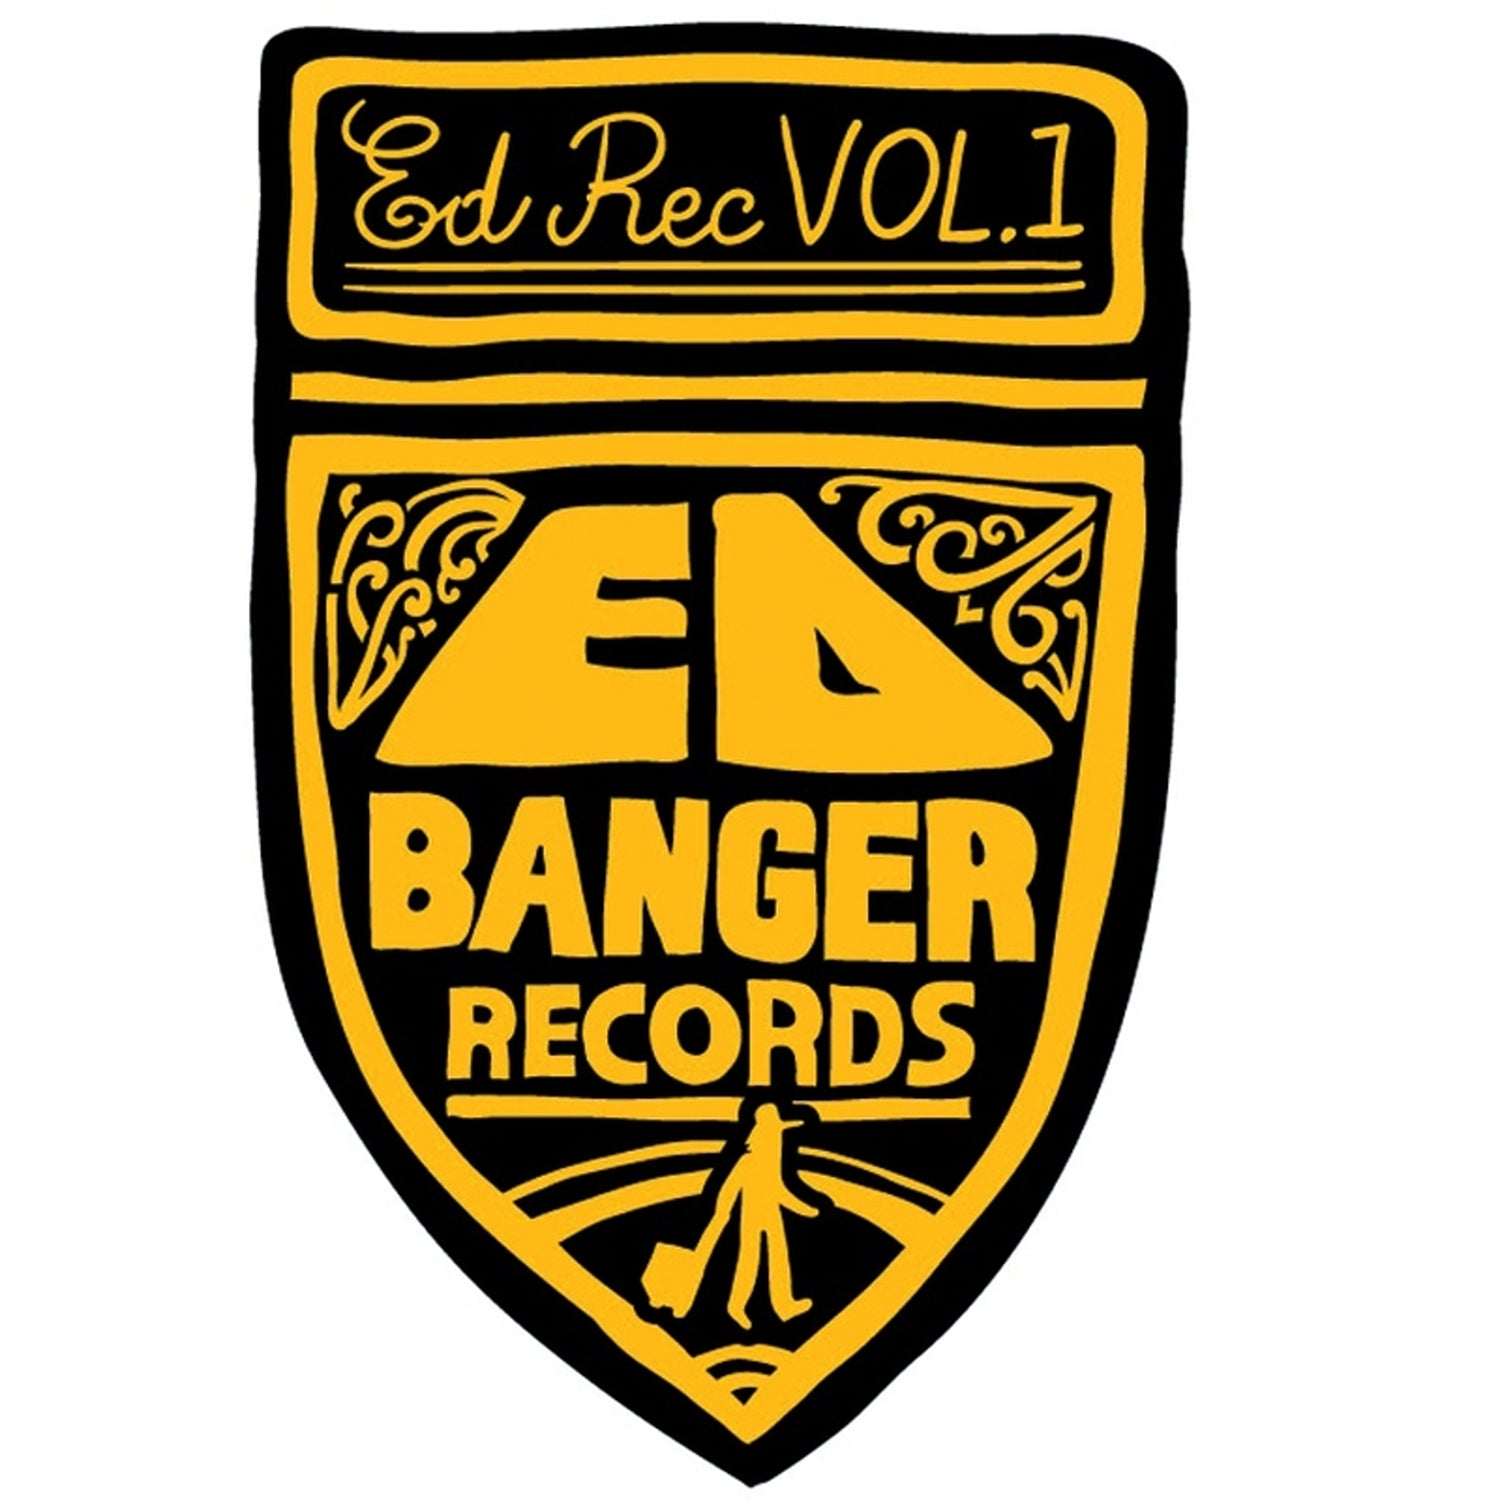 VARIOUS ARTISTS (ED BANGER RECORDS) - Ed Rec Vol.1 - 2LP - Vinyl [RSD2021-JUL 17]